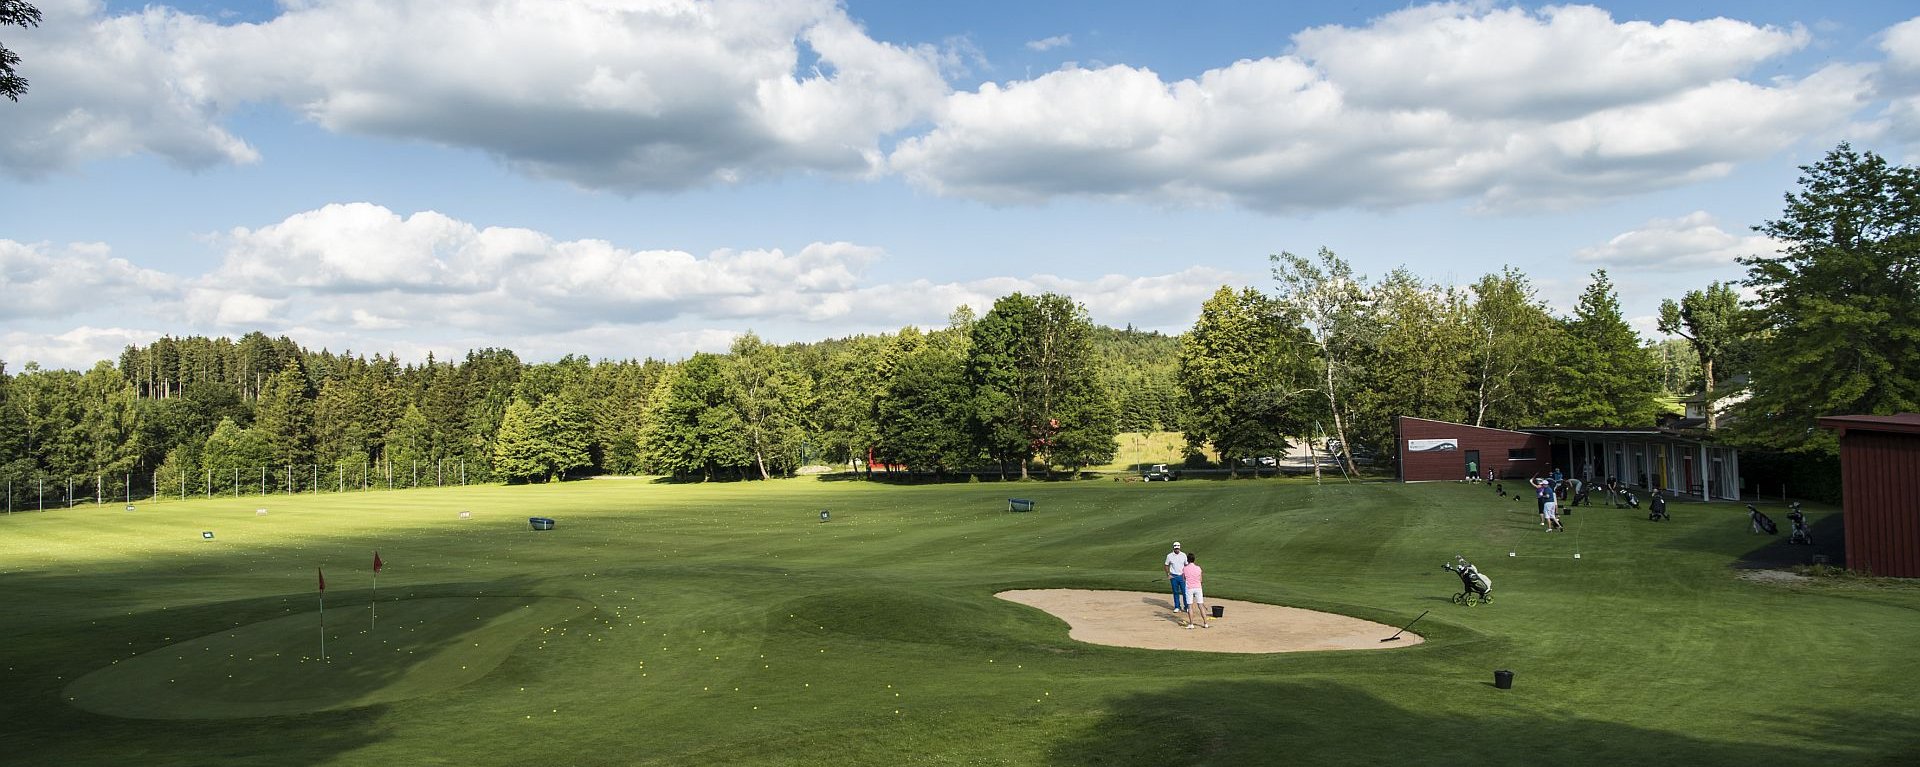 Die Driving-Range des Allgäuer Golf- und Landclub e.V. mit vielen Golfern in den Schlaghäuschen und vielen auf dem Green verteilten Golfbällen